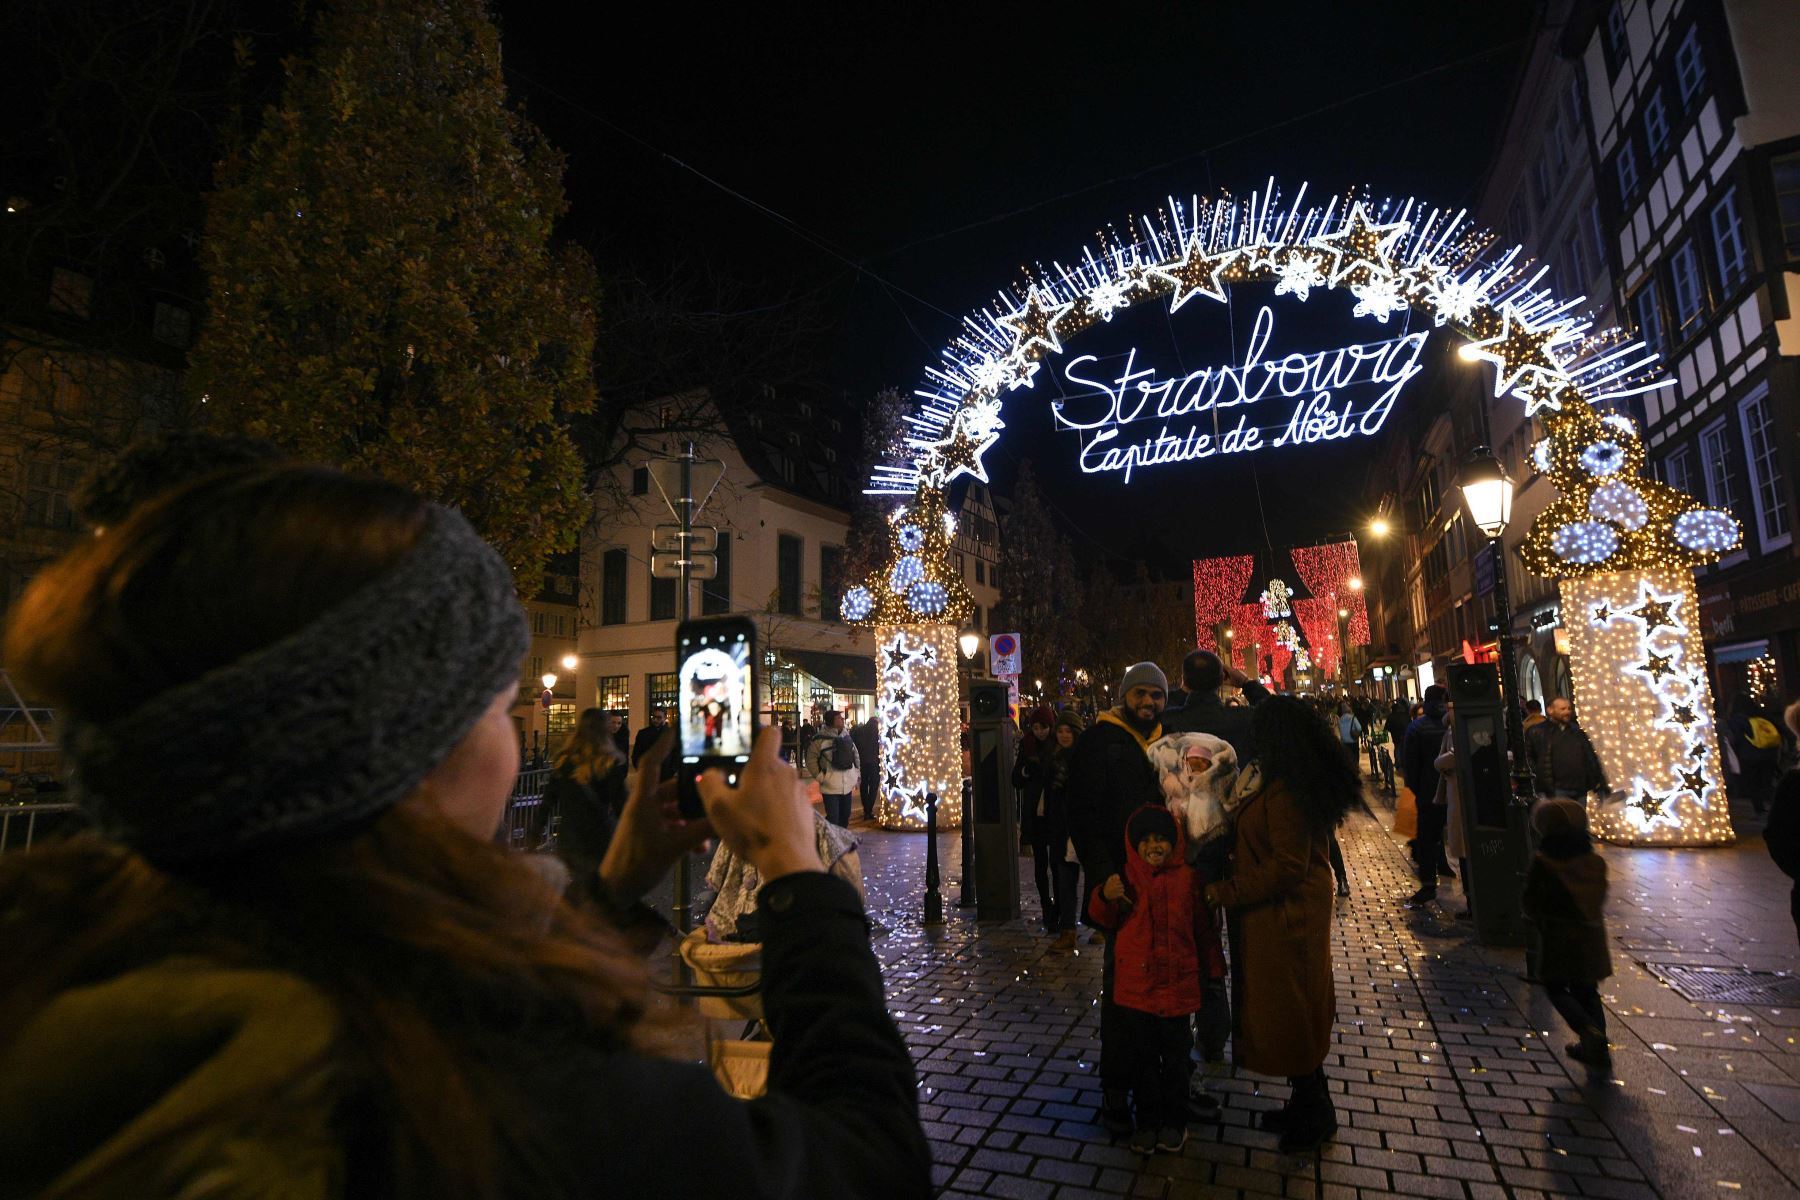 Foto de archivo tomada el 23 de noviembre de 2018, del mercado navideño en la ciudad de Estrasburgo, Francia Foto: AFP